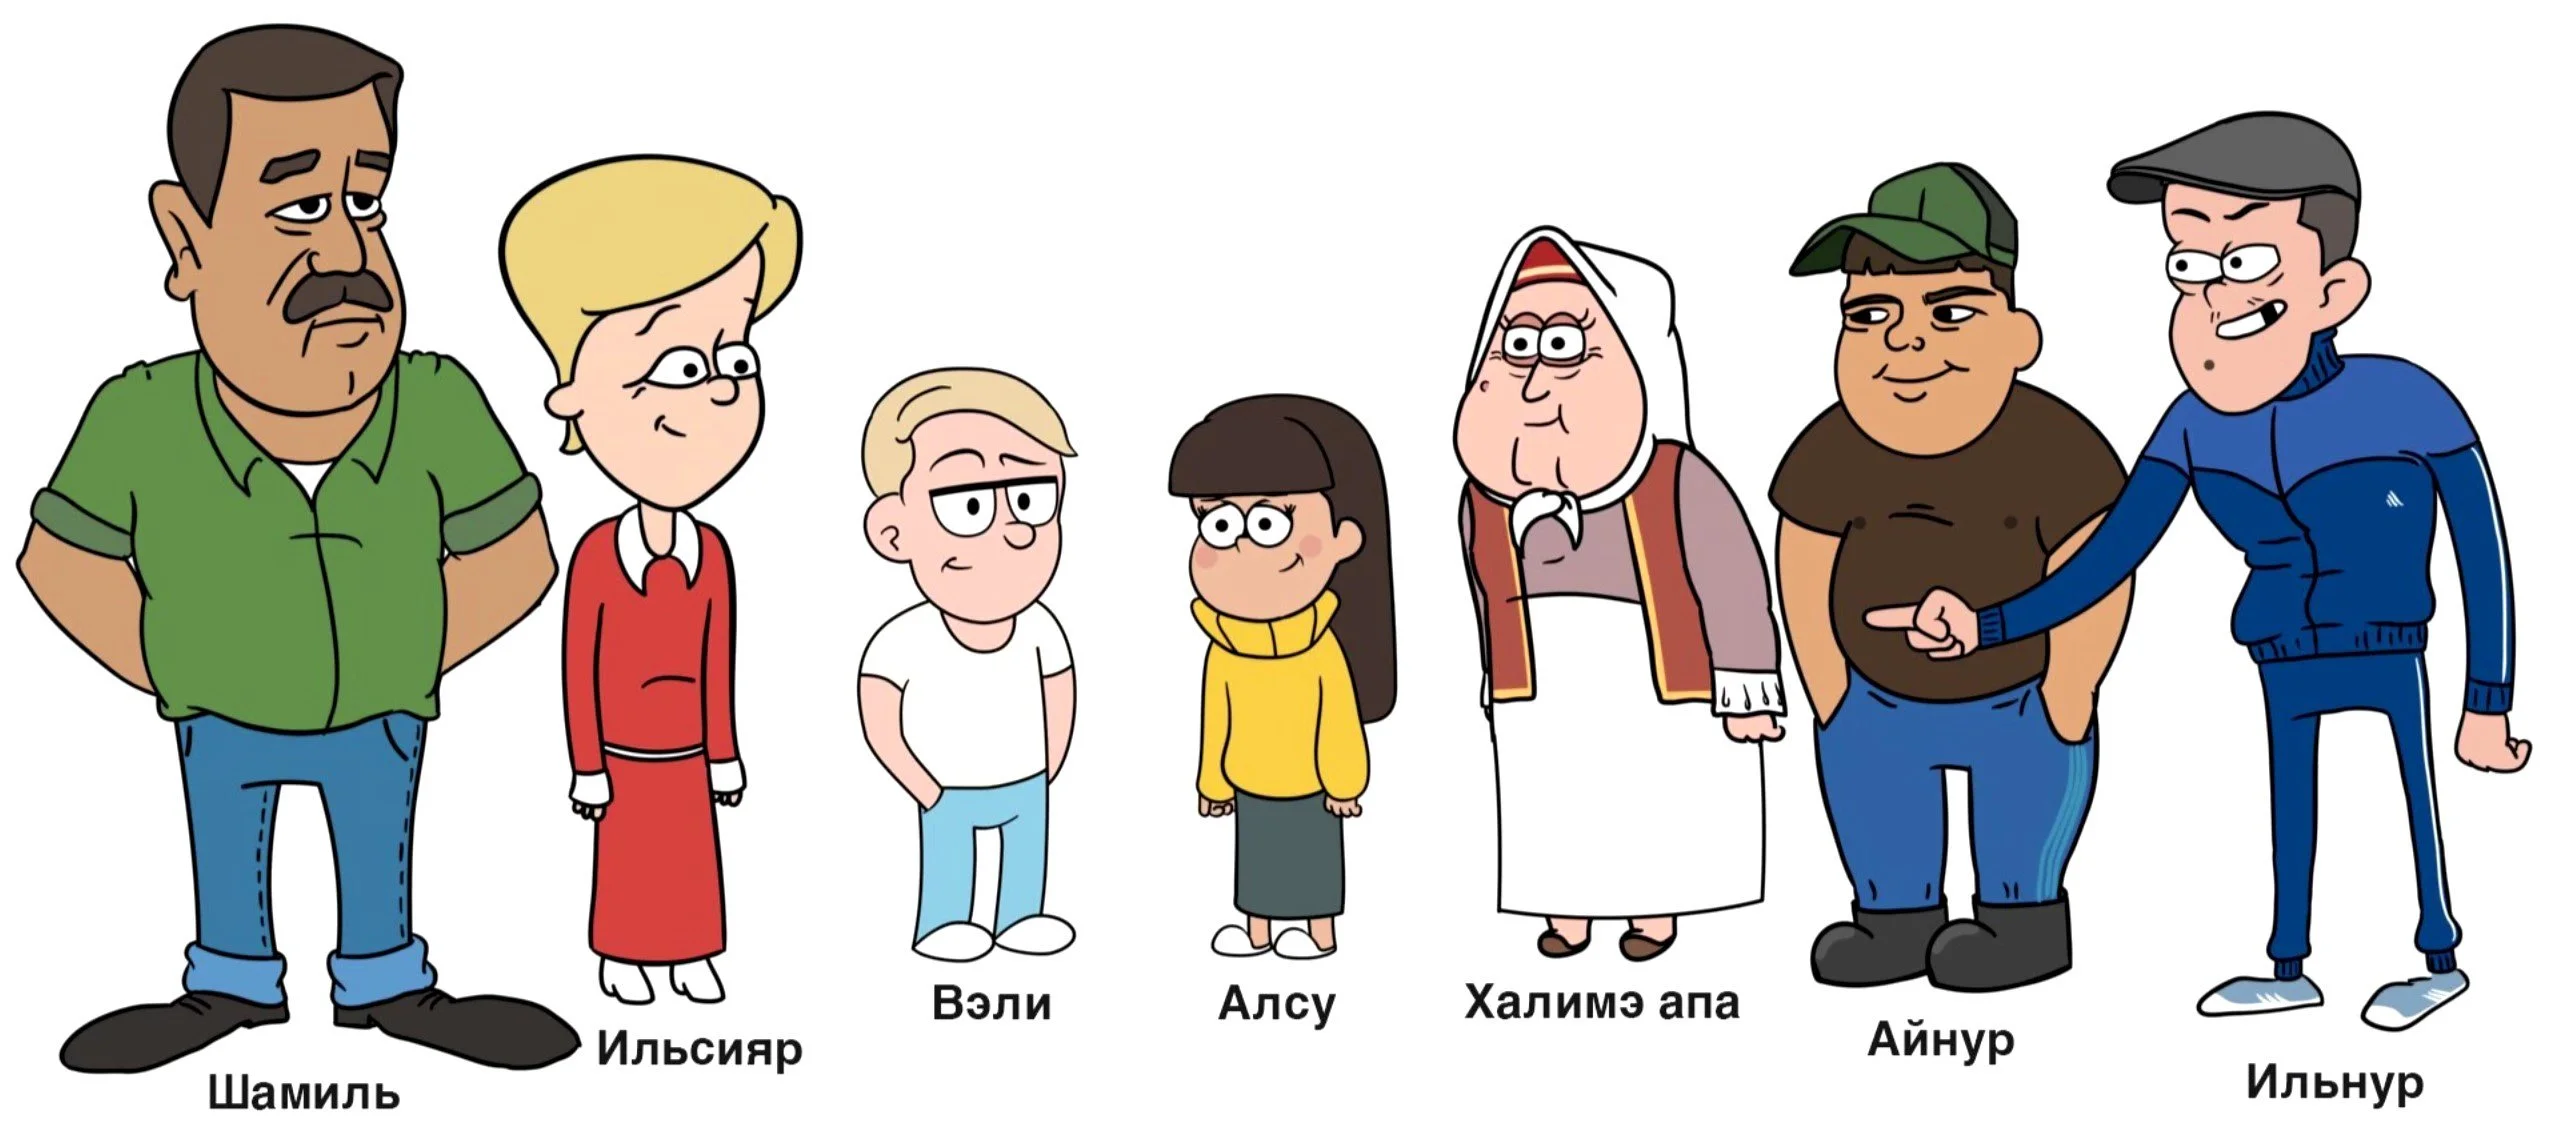 В Татарстане сняли собственную версию Gravity Falls. И это очень плохо - фото 1